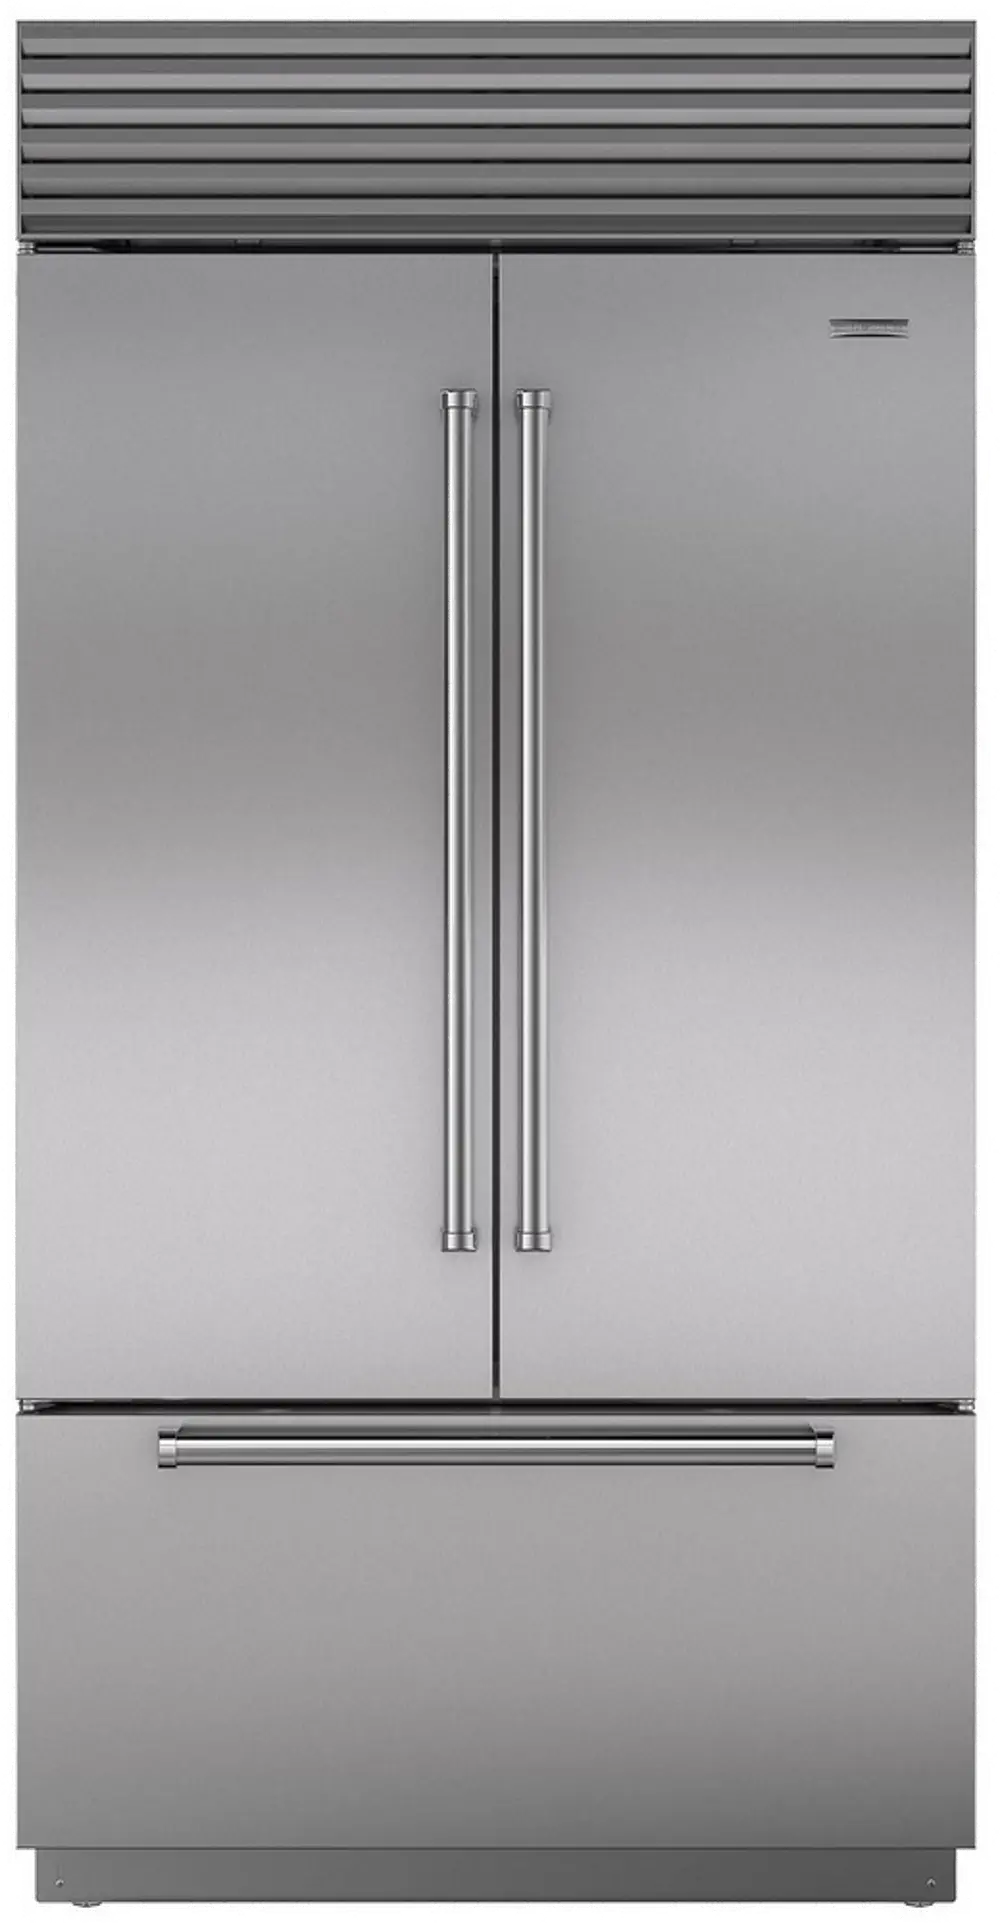 BI-42UFD/S/PH Sub-Zero 42 Inch Classic French Door Smart Refrigerator - Stainless Steel-1